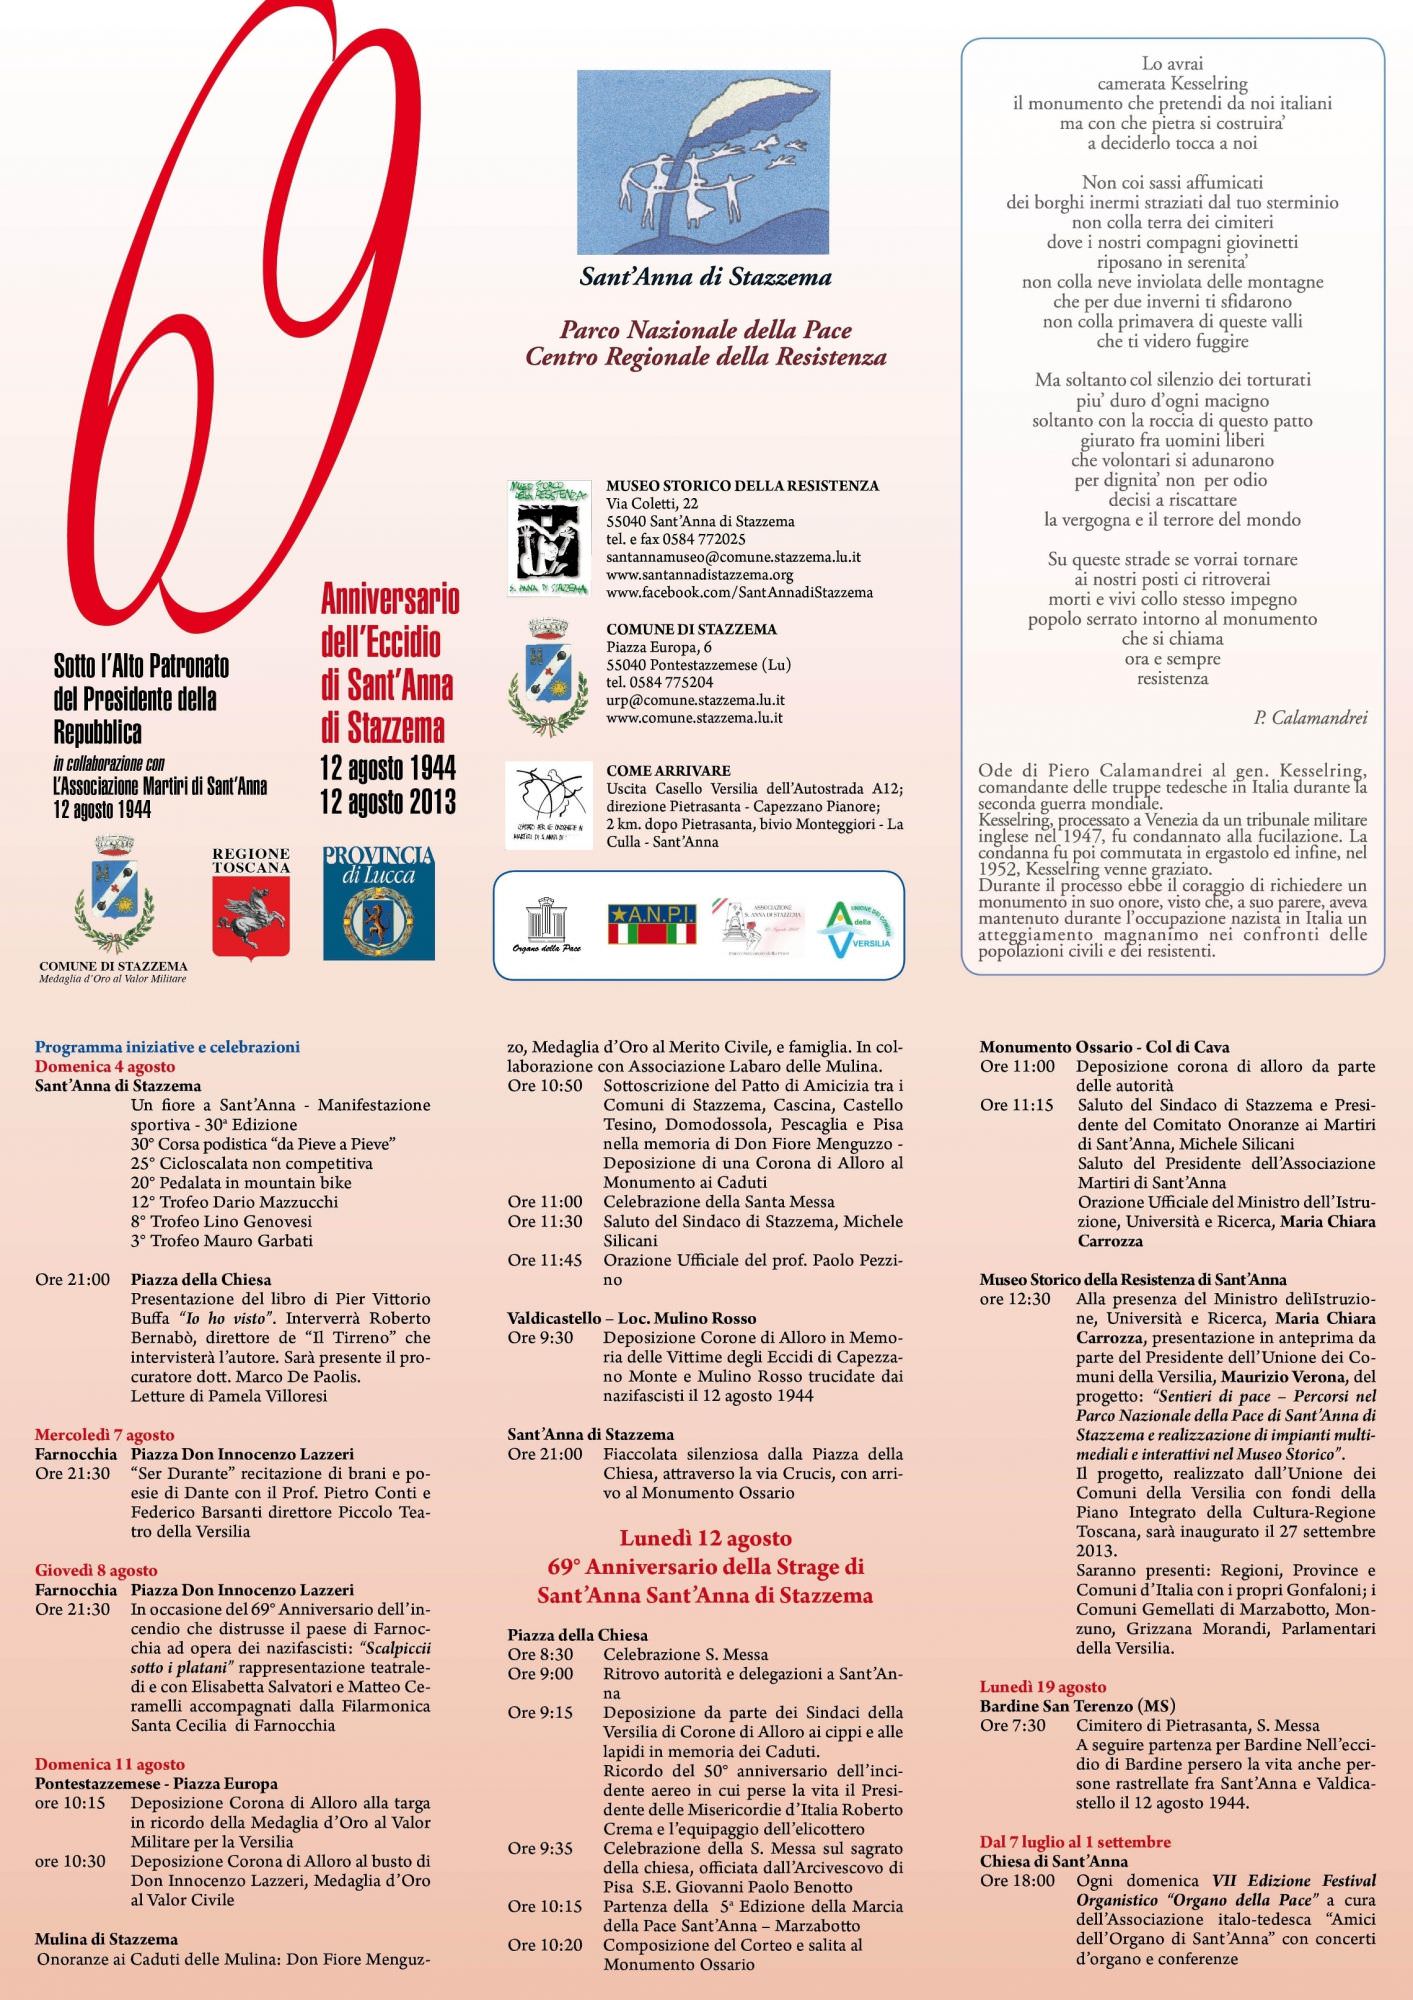 Sant’Anna di Stazzema, il programma delle commemorazioni del 69° anniversario dell’eccidio